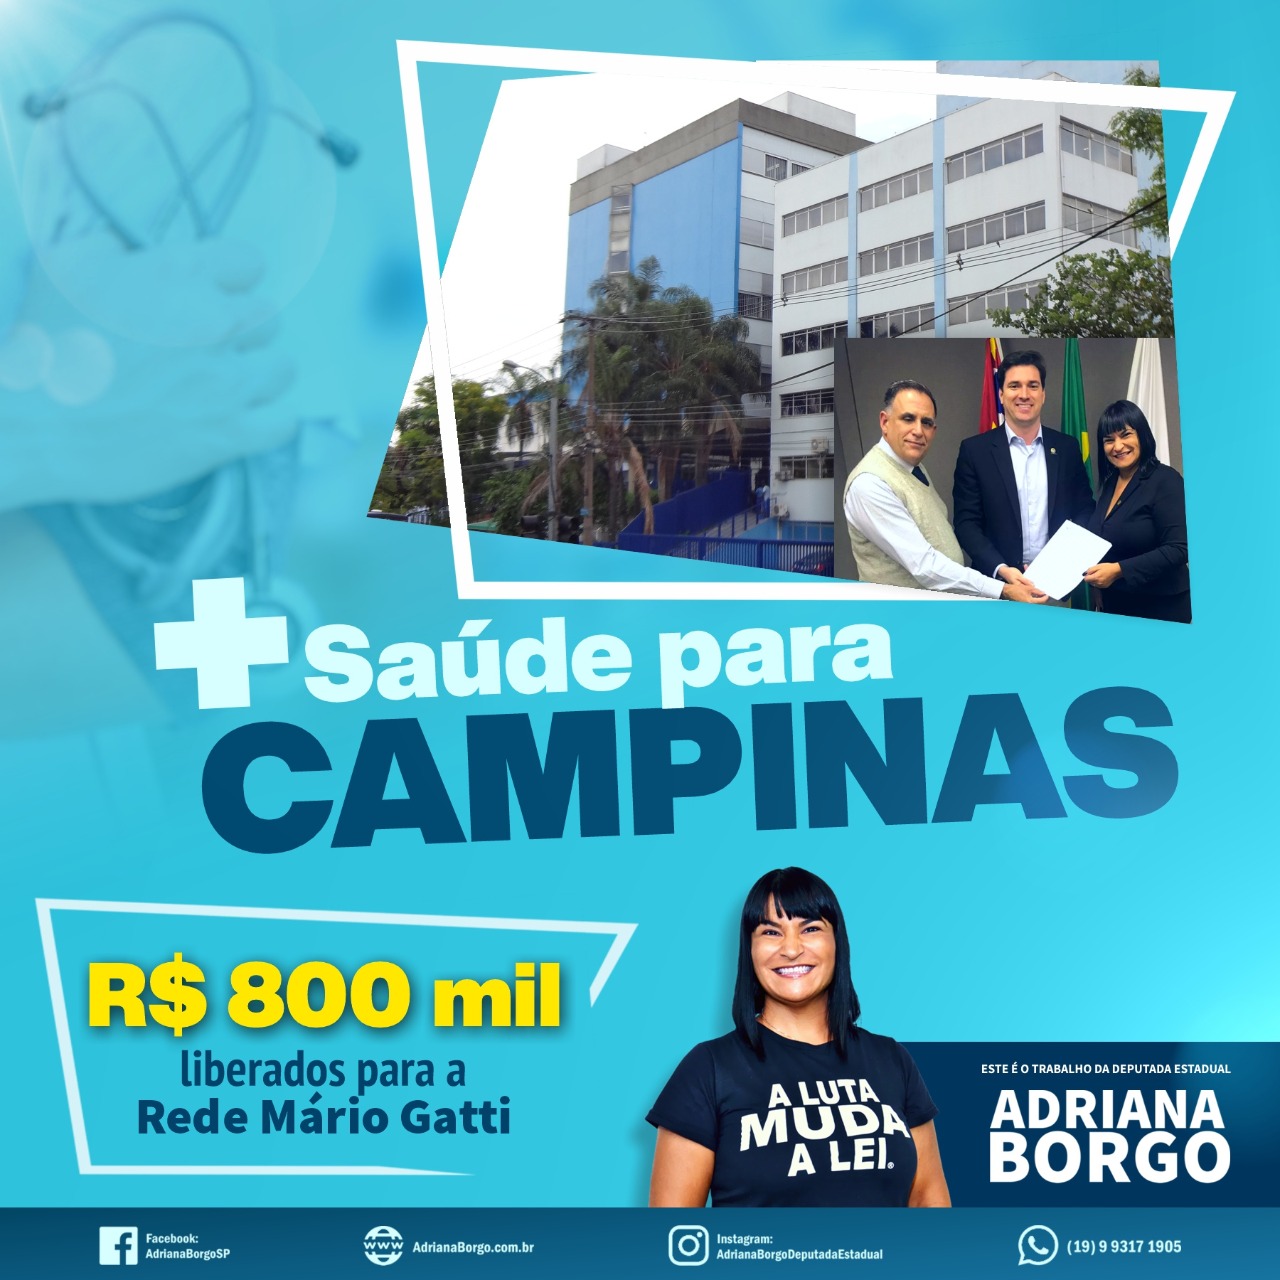 Adriana Borgo - Emenda para Saude de Campinas - Hospital Mario Gatti